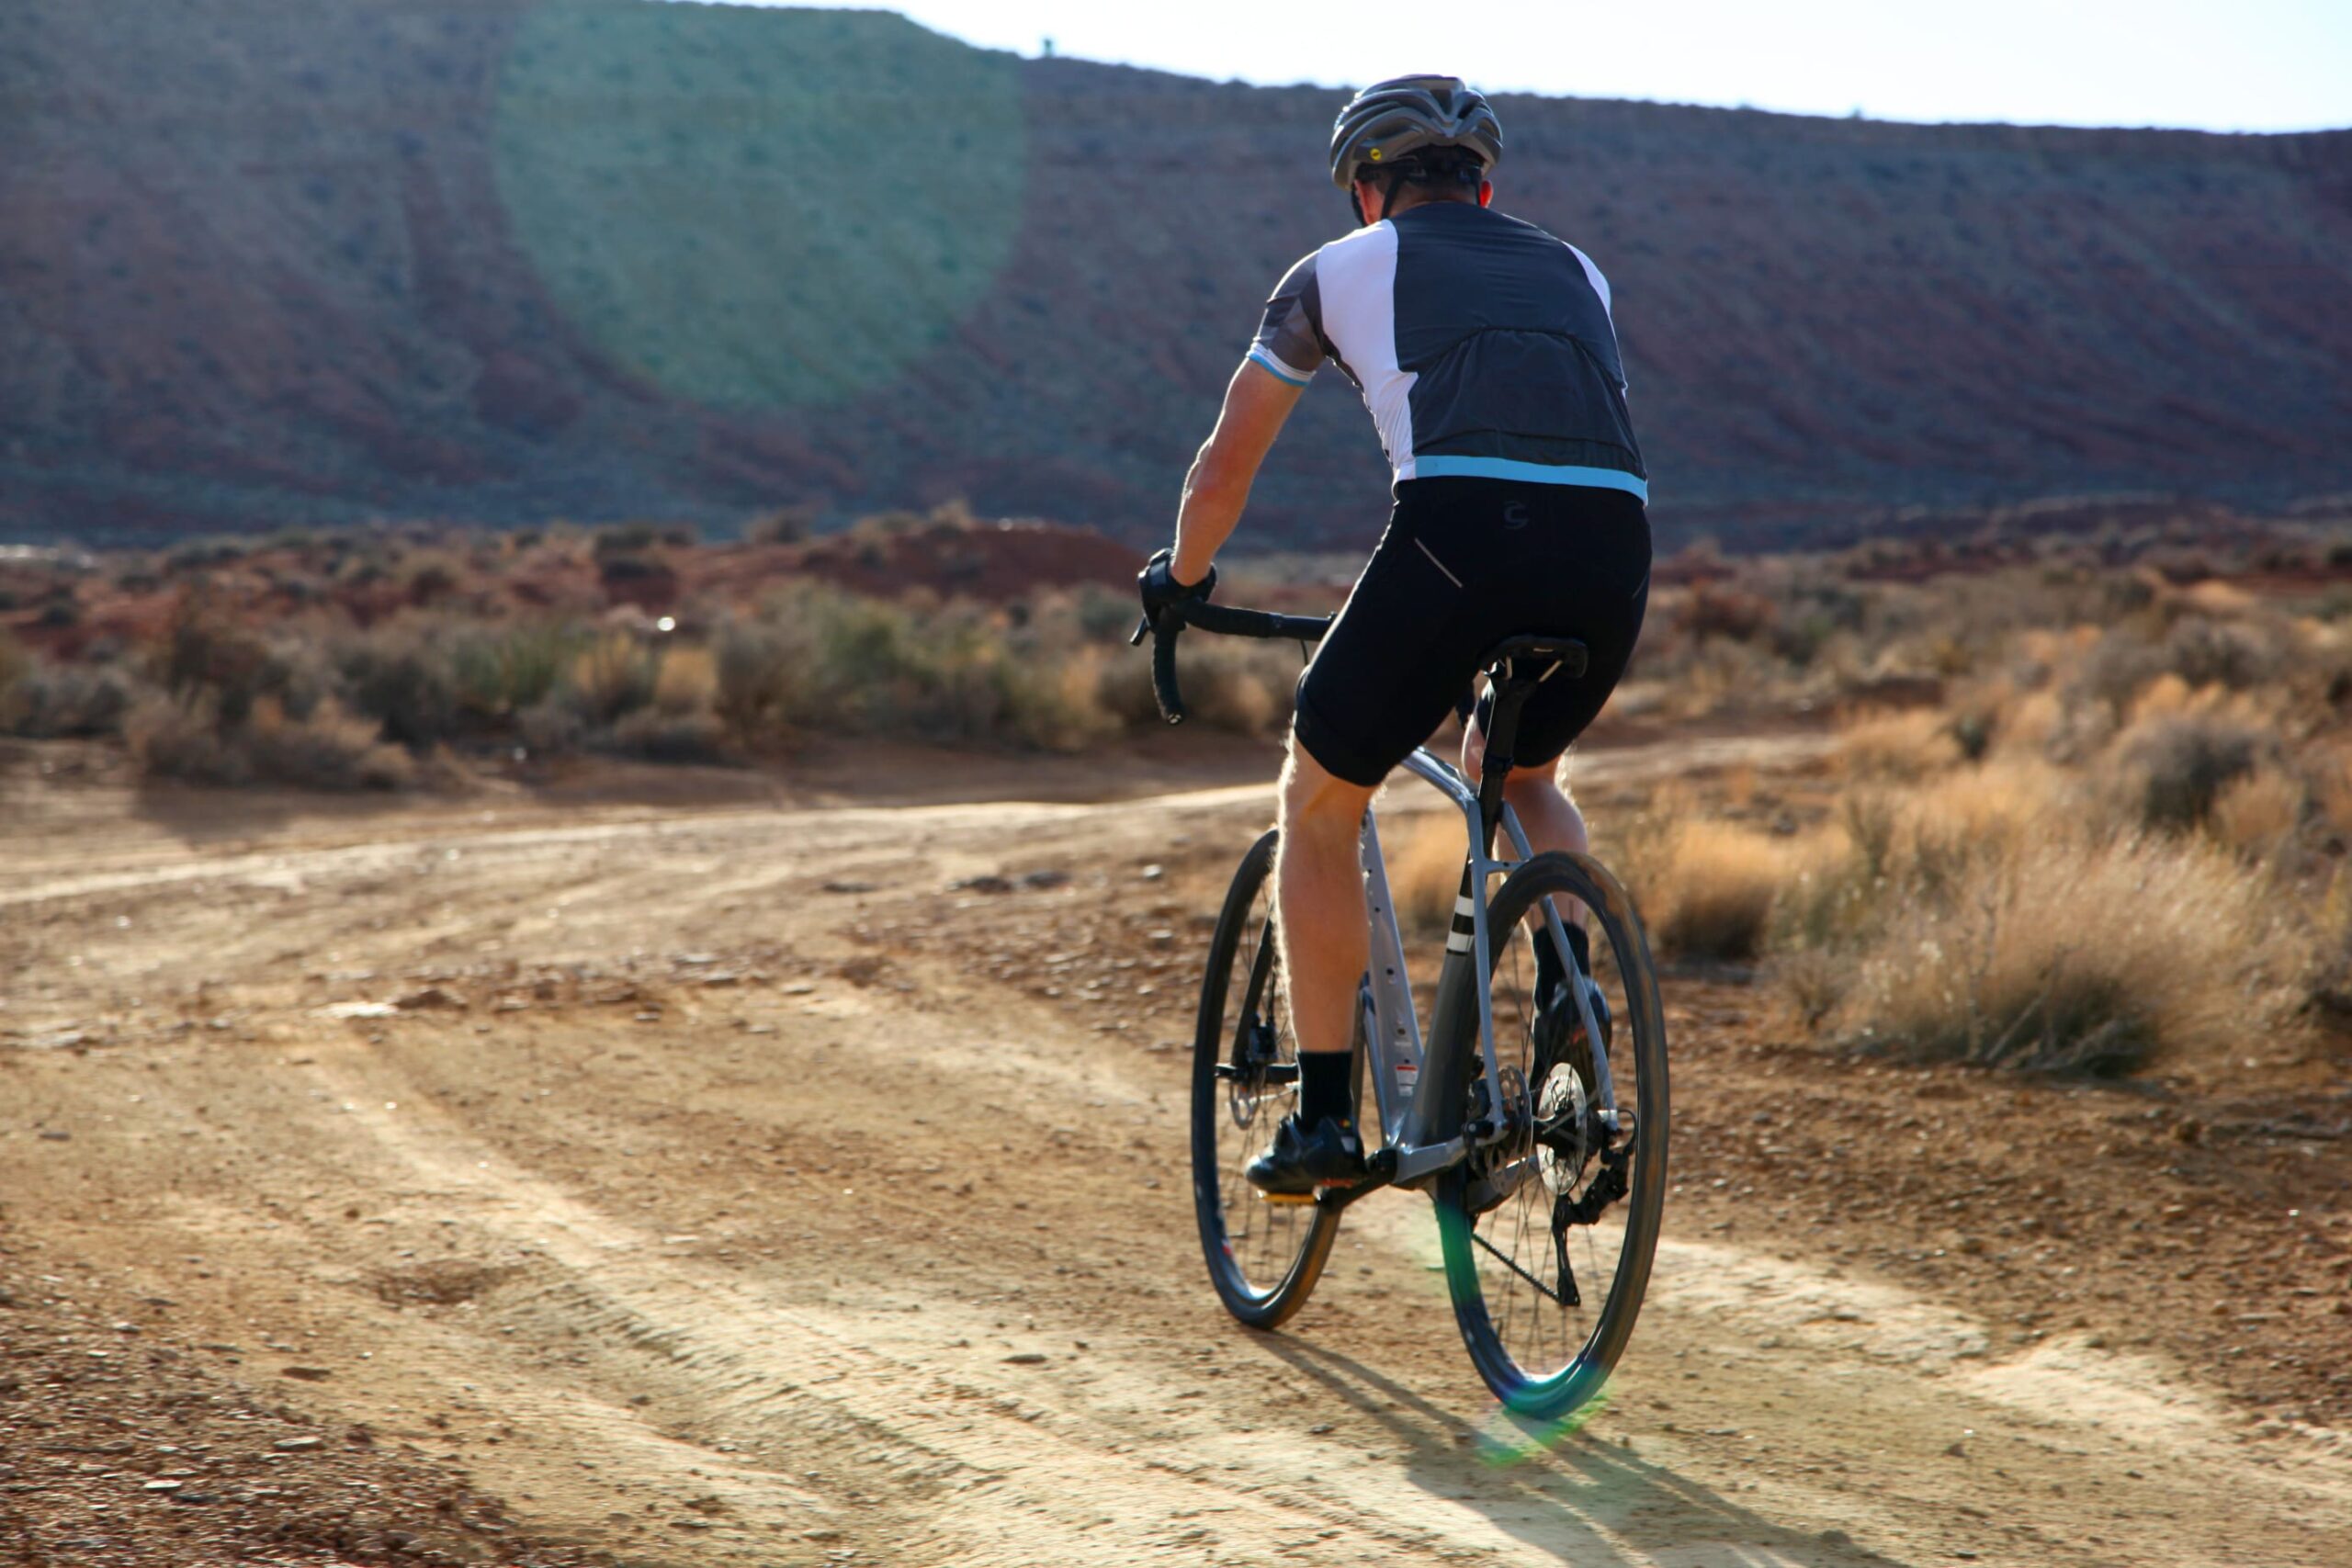 Persoon fietst door de woestijn, op een onverharde weg met bergen op de achtergrond.